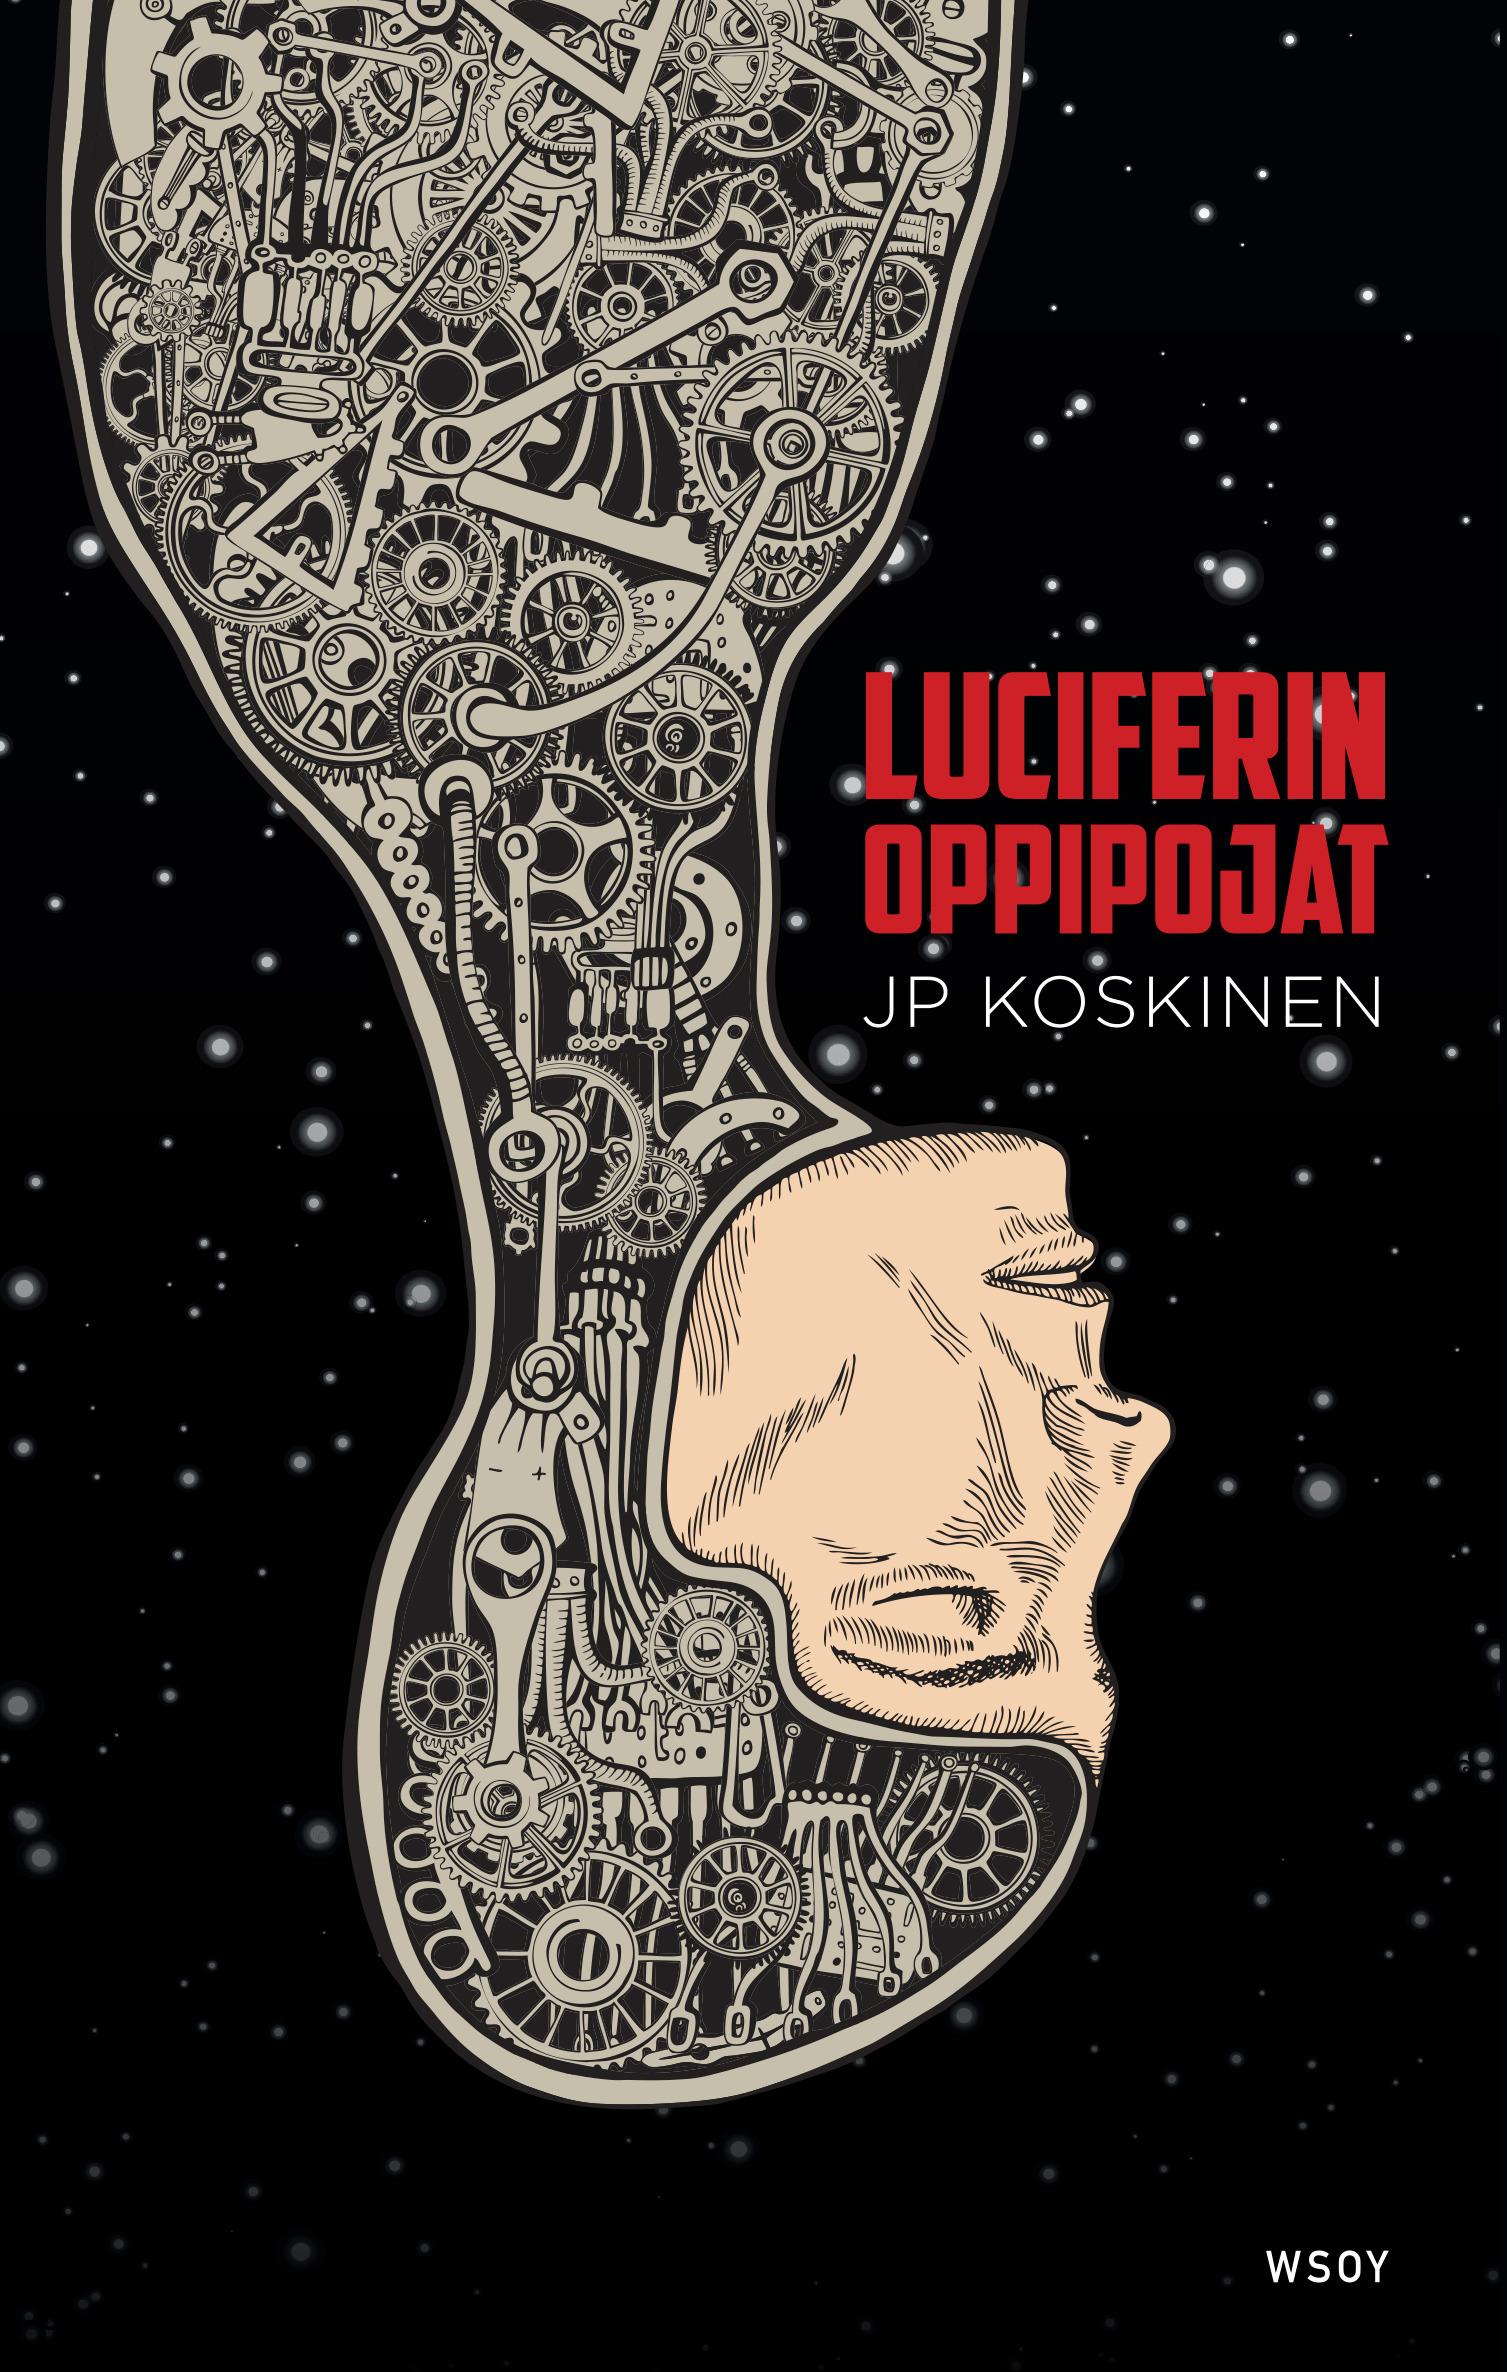 Juha-Pekka Koskinen: Luciferin oppipojat (Finnish language, 2016)